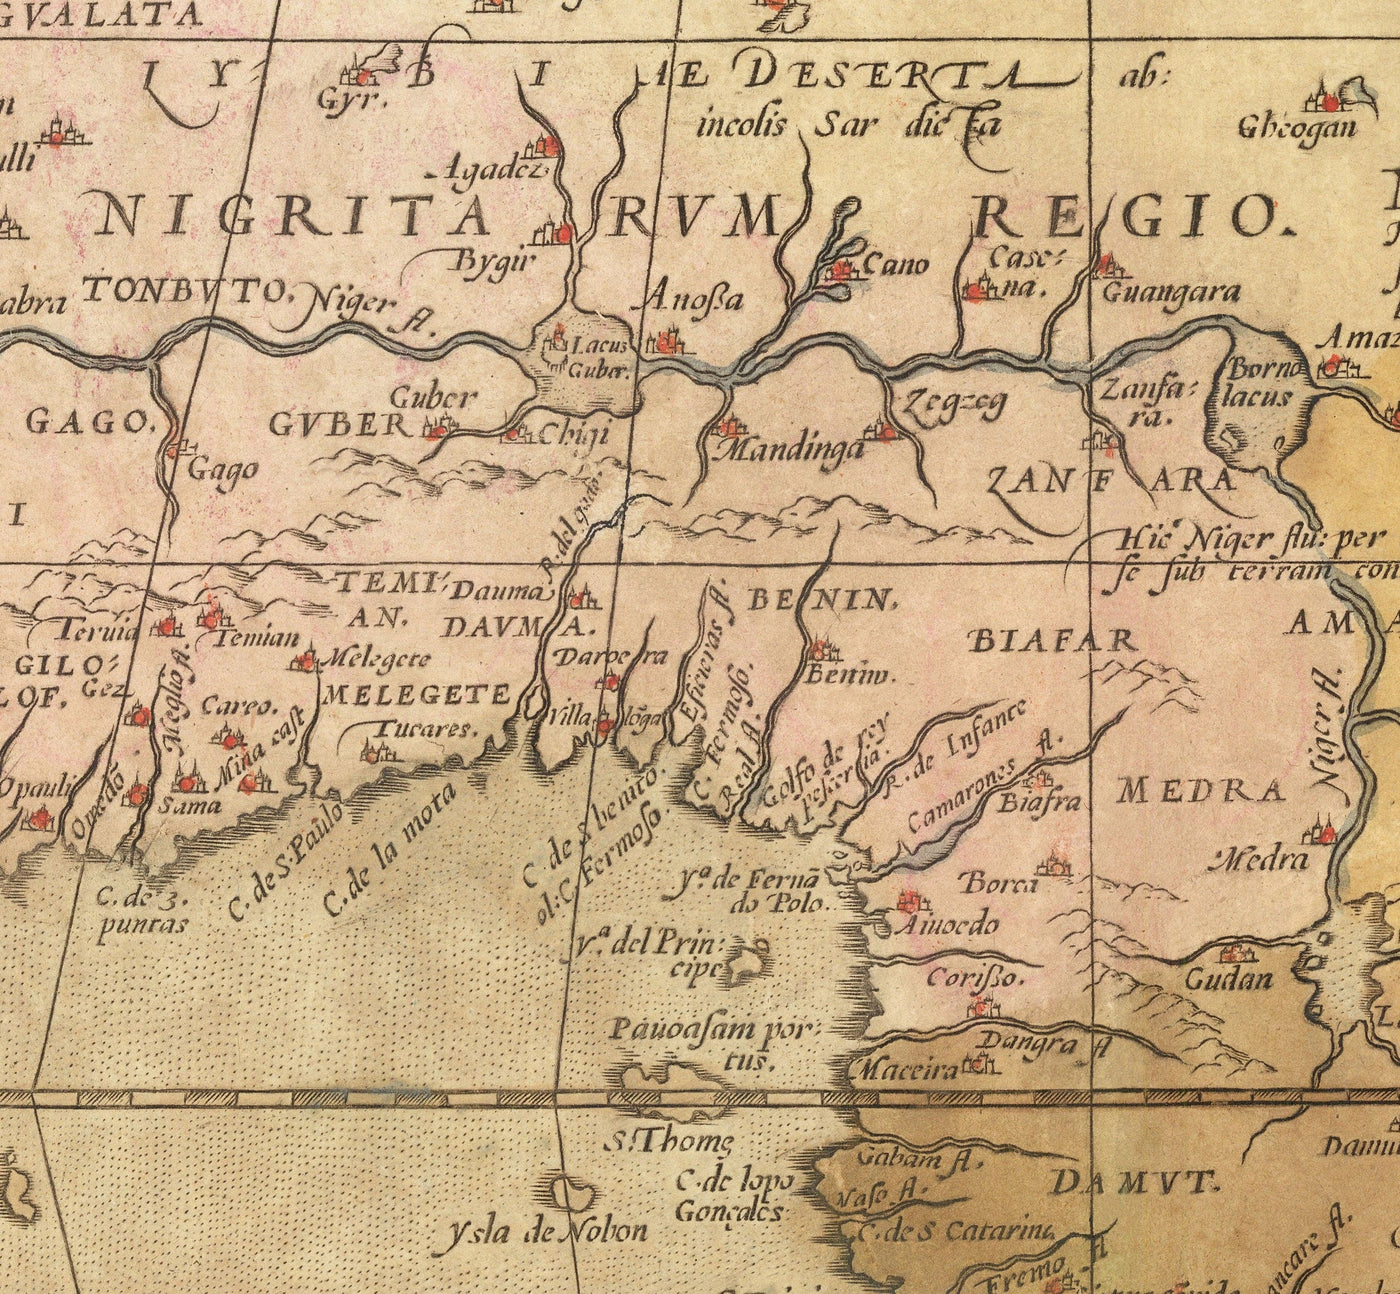 Mapa antiguo de África por Abraham Ortelius, 1570 - primer mapa del continente africano - Nubia, Zanzíbar, África Central, Nilo